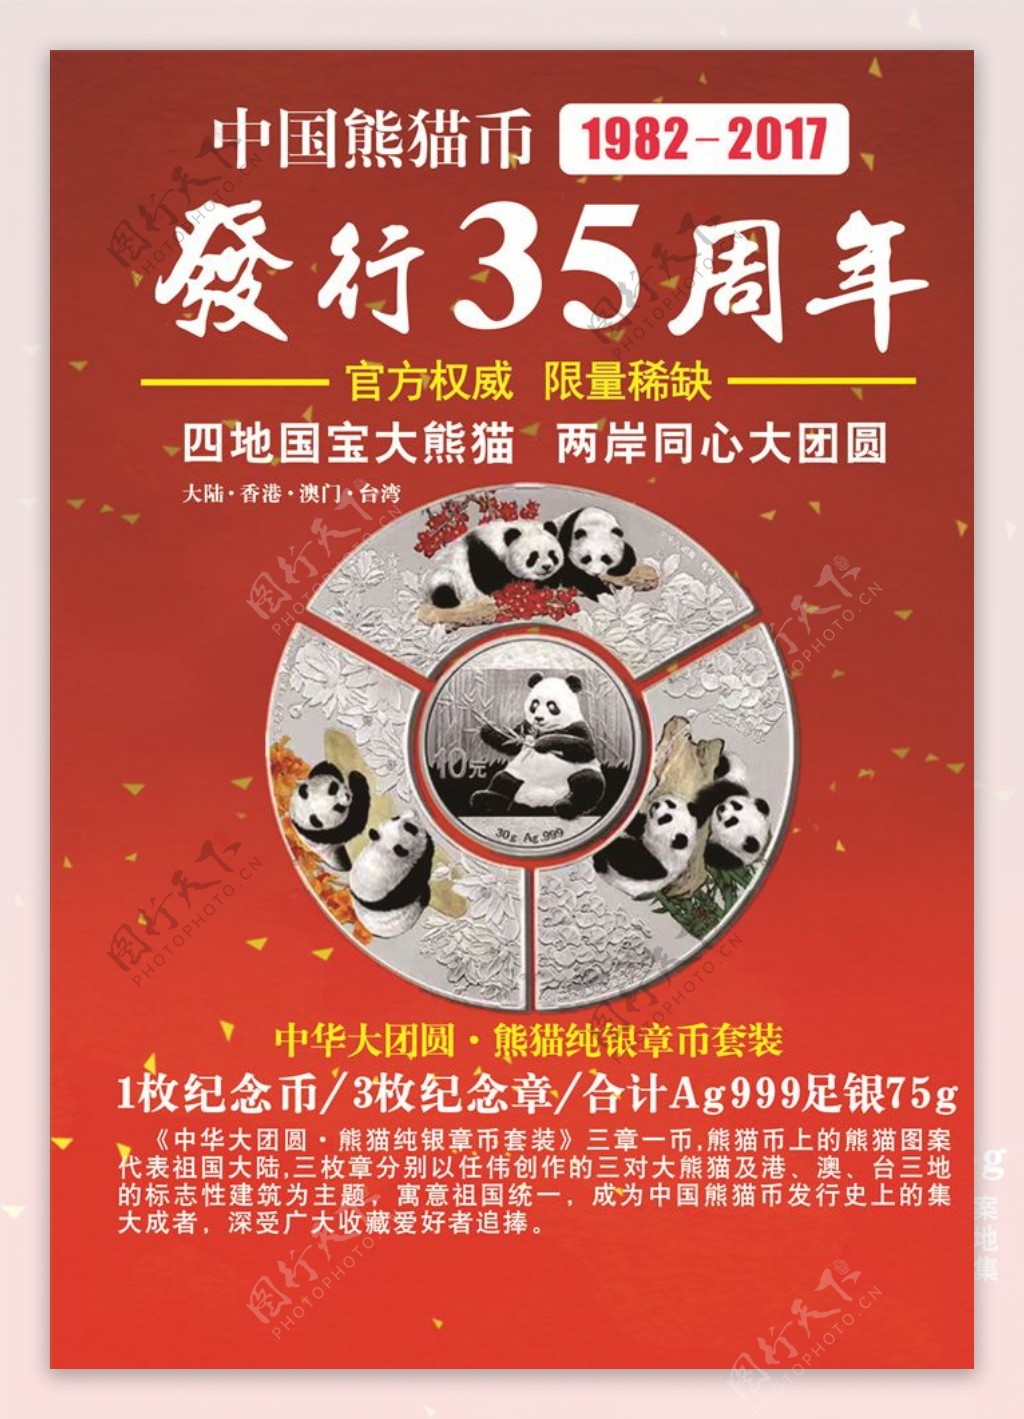 中国熊猫币发行35周年纪念币